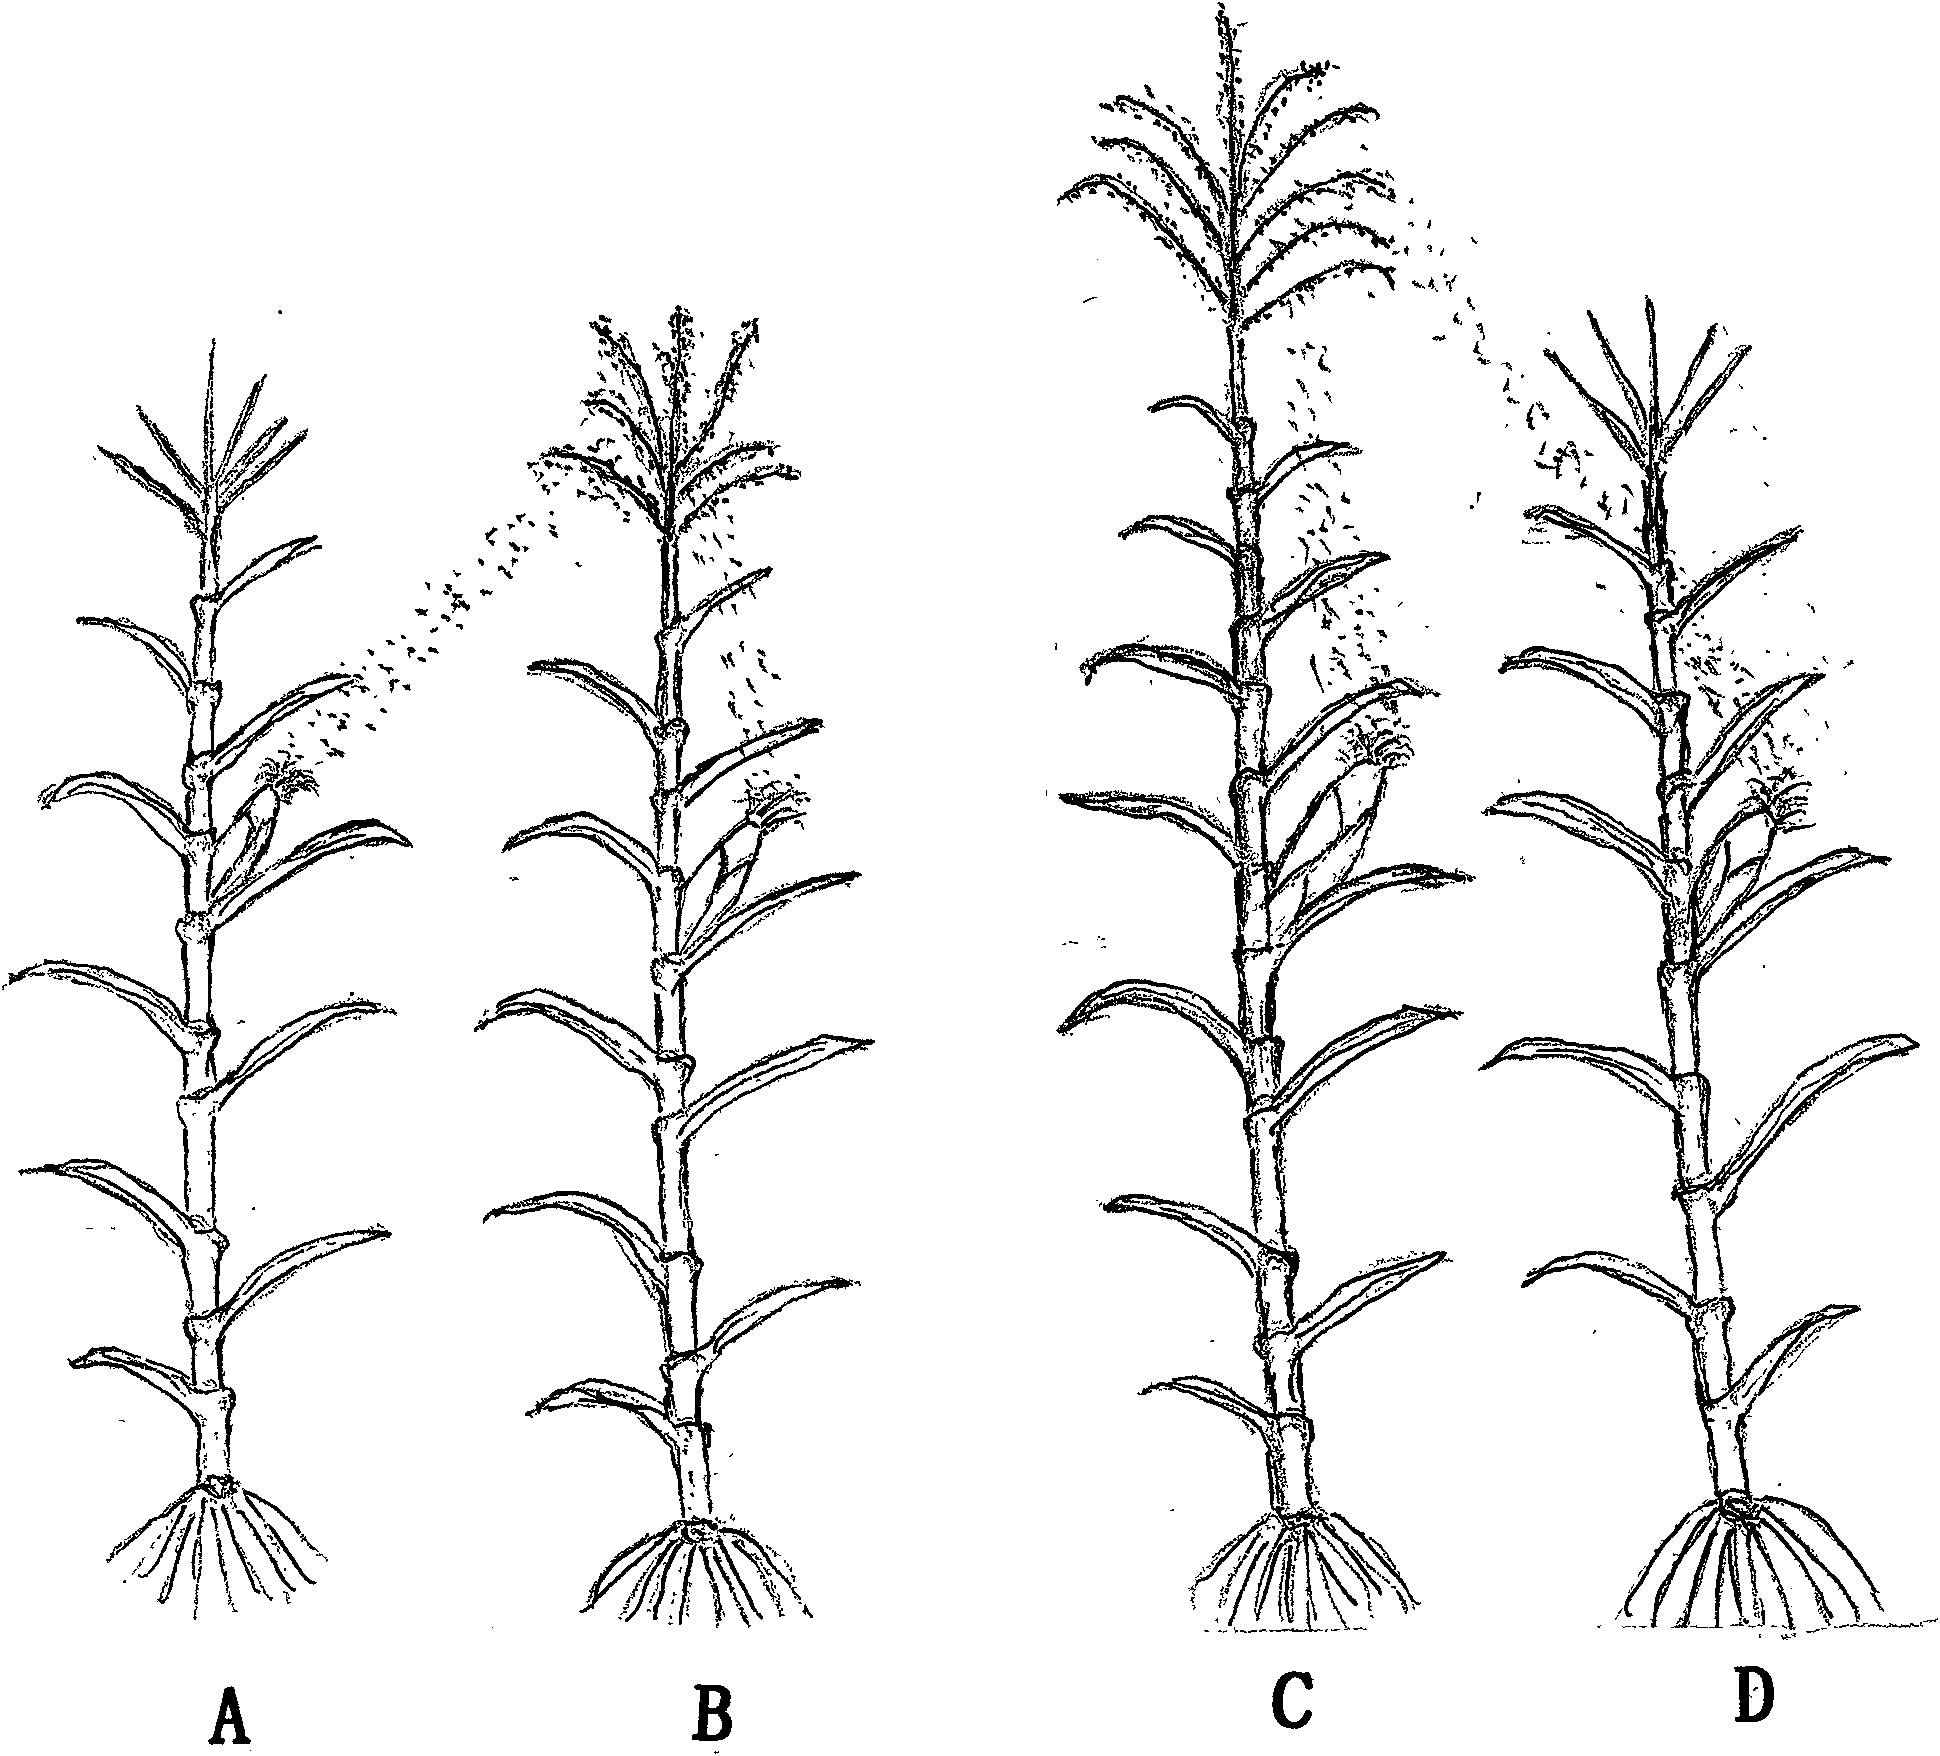 Corn three-line breeding technique